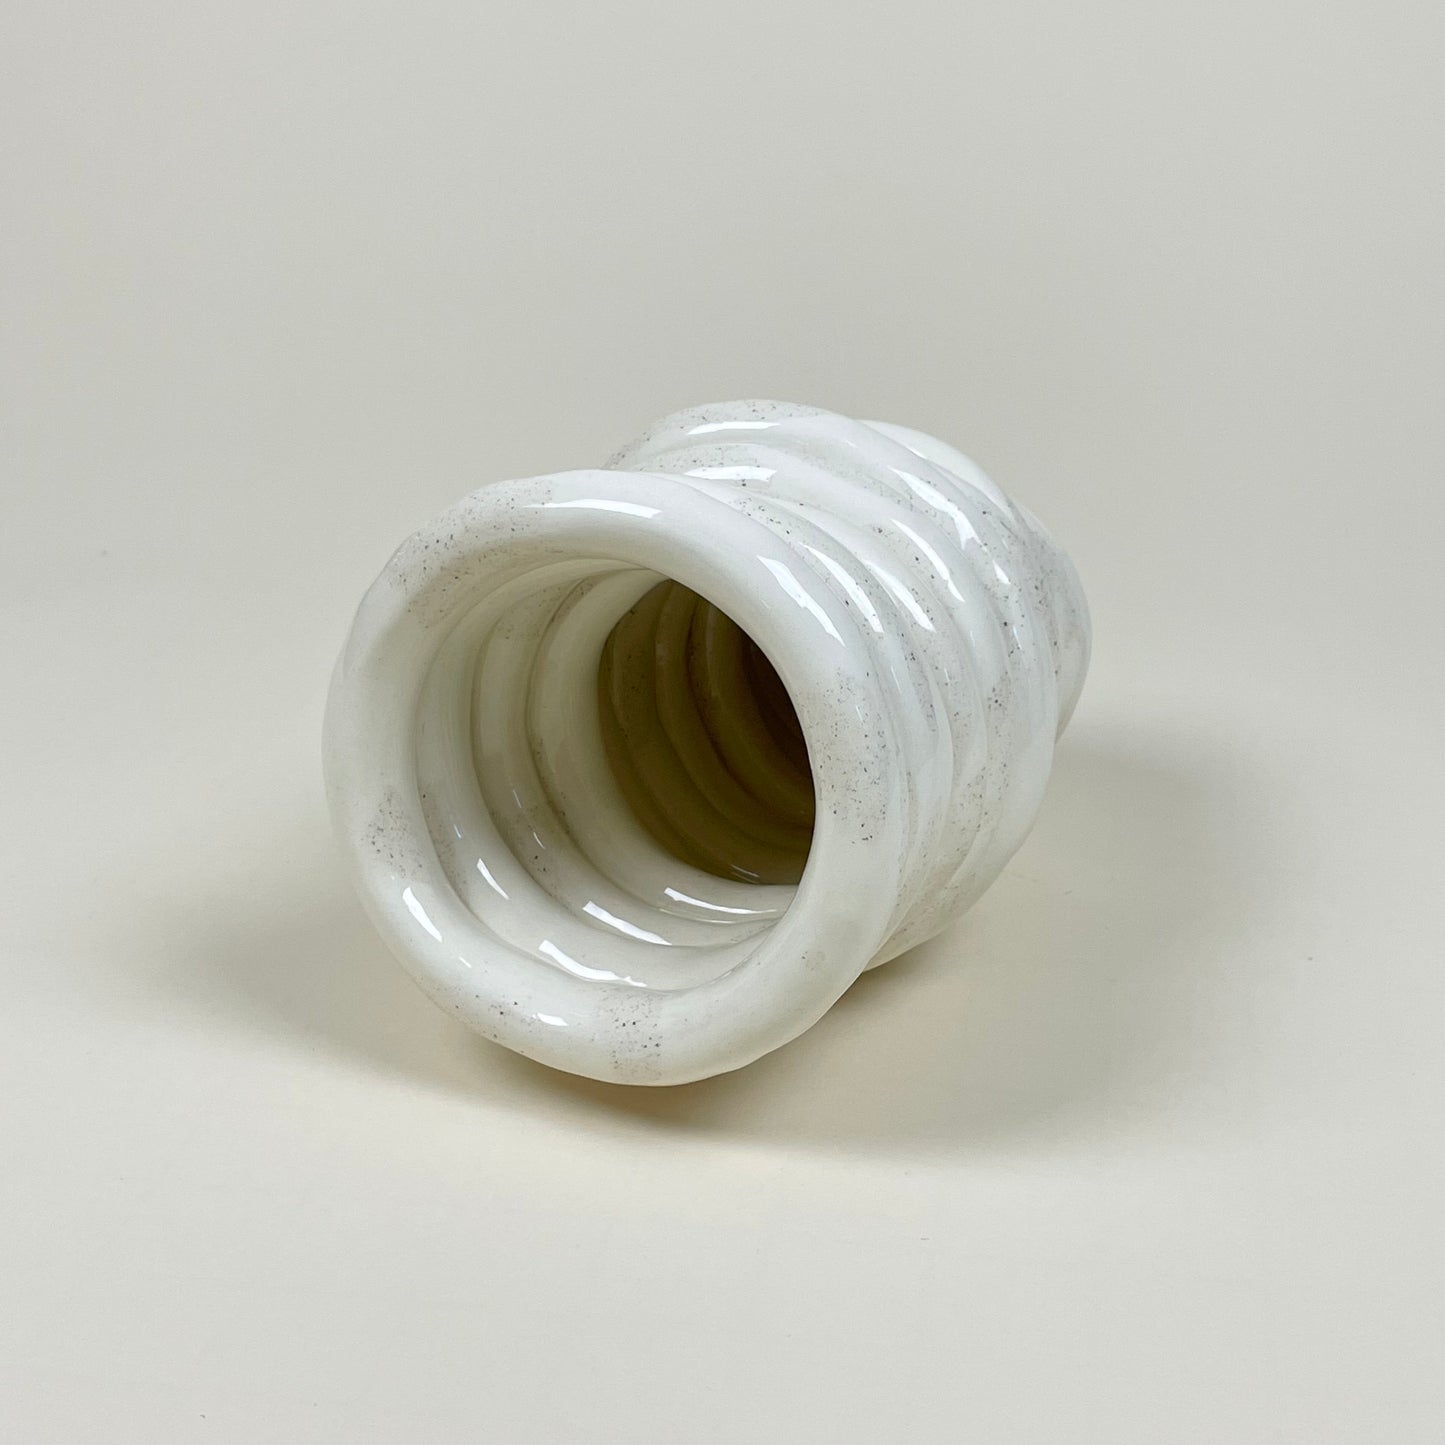 Ceramic vase by Joanna Günther